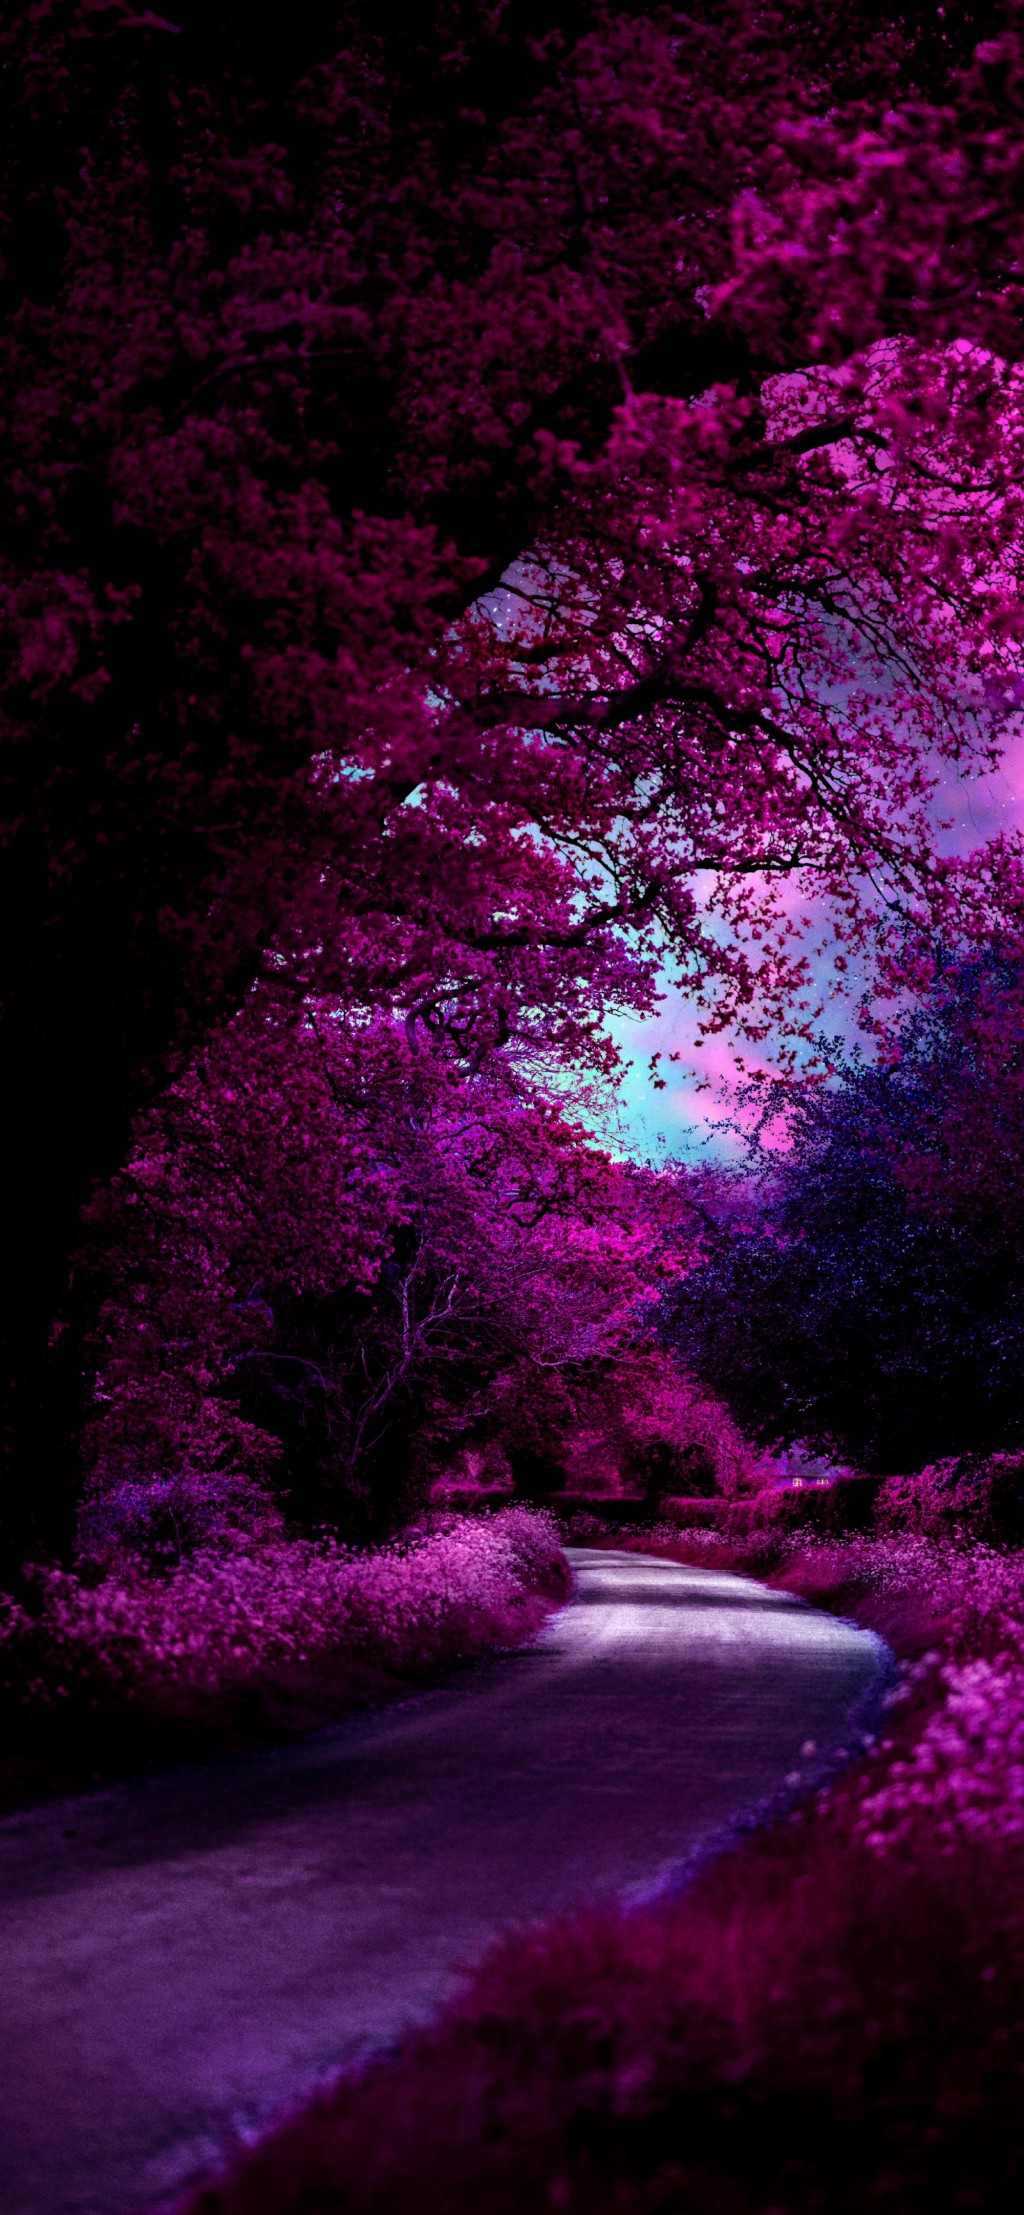 暗紫色系列梦幻风景手机壁纸